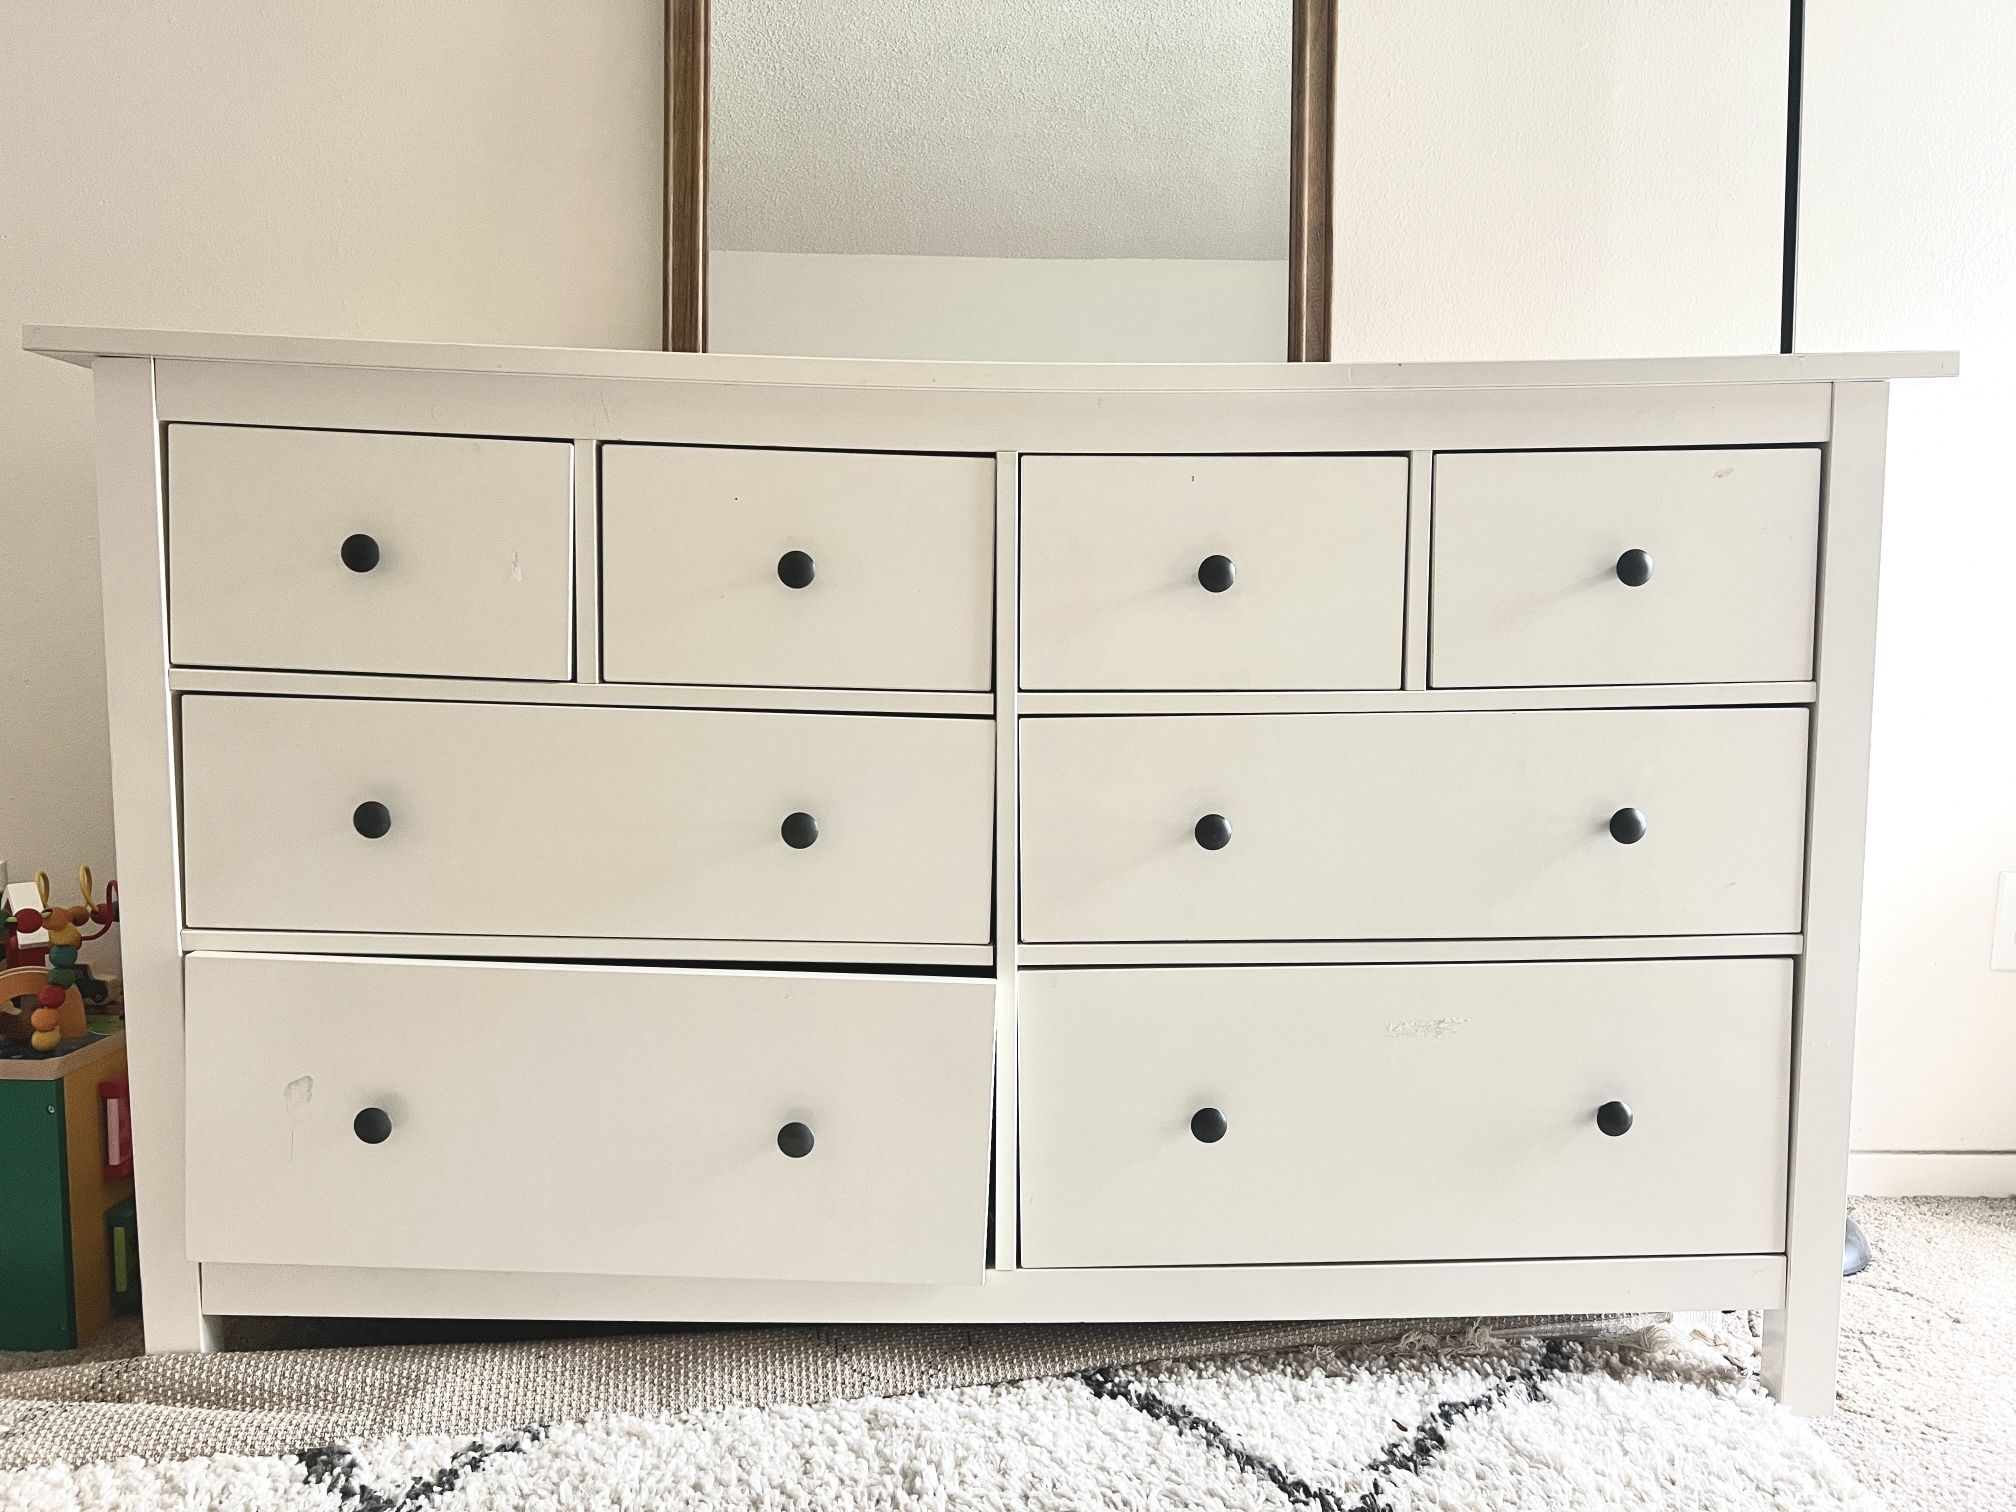 Ikea Hemnes Dresser - 8 Drawers White Gloss